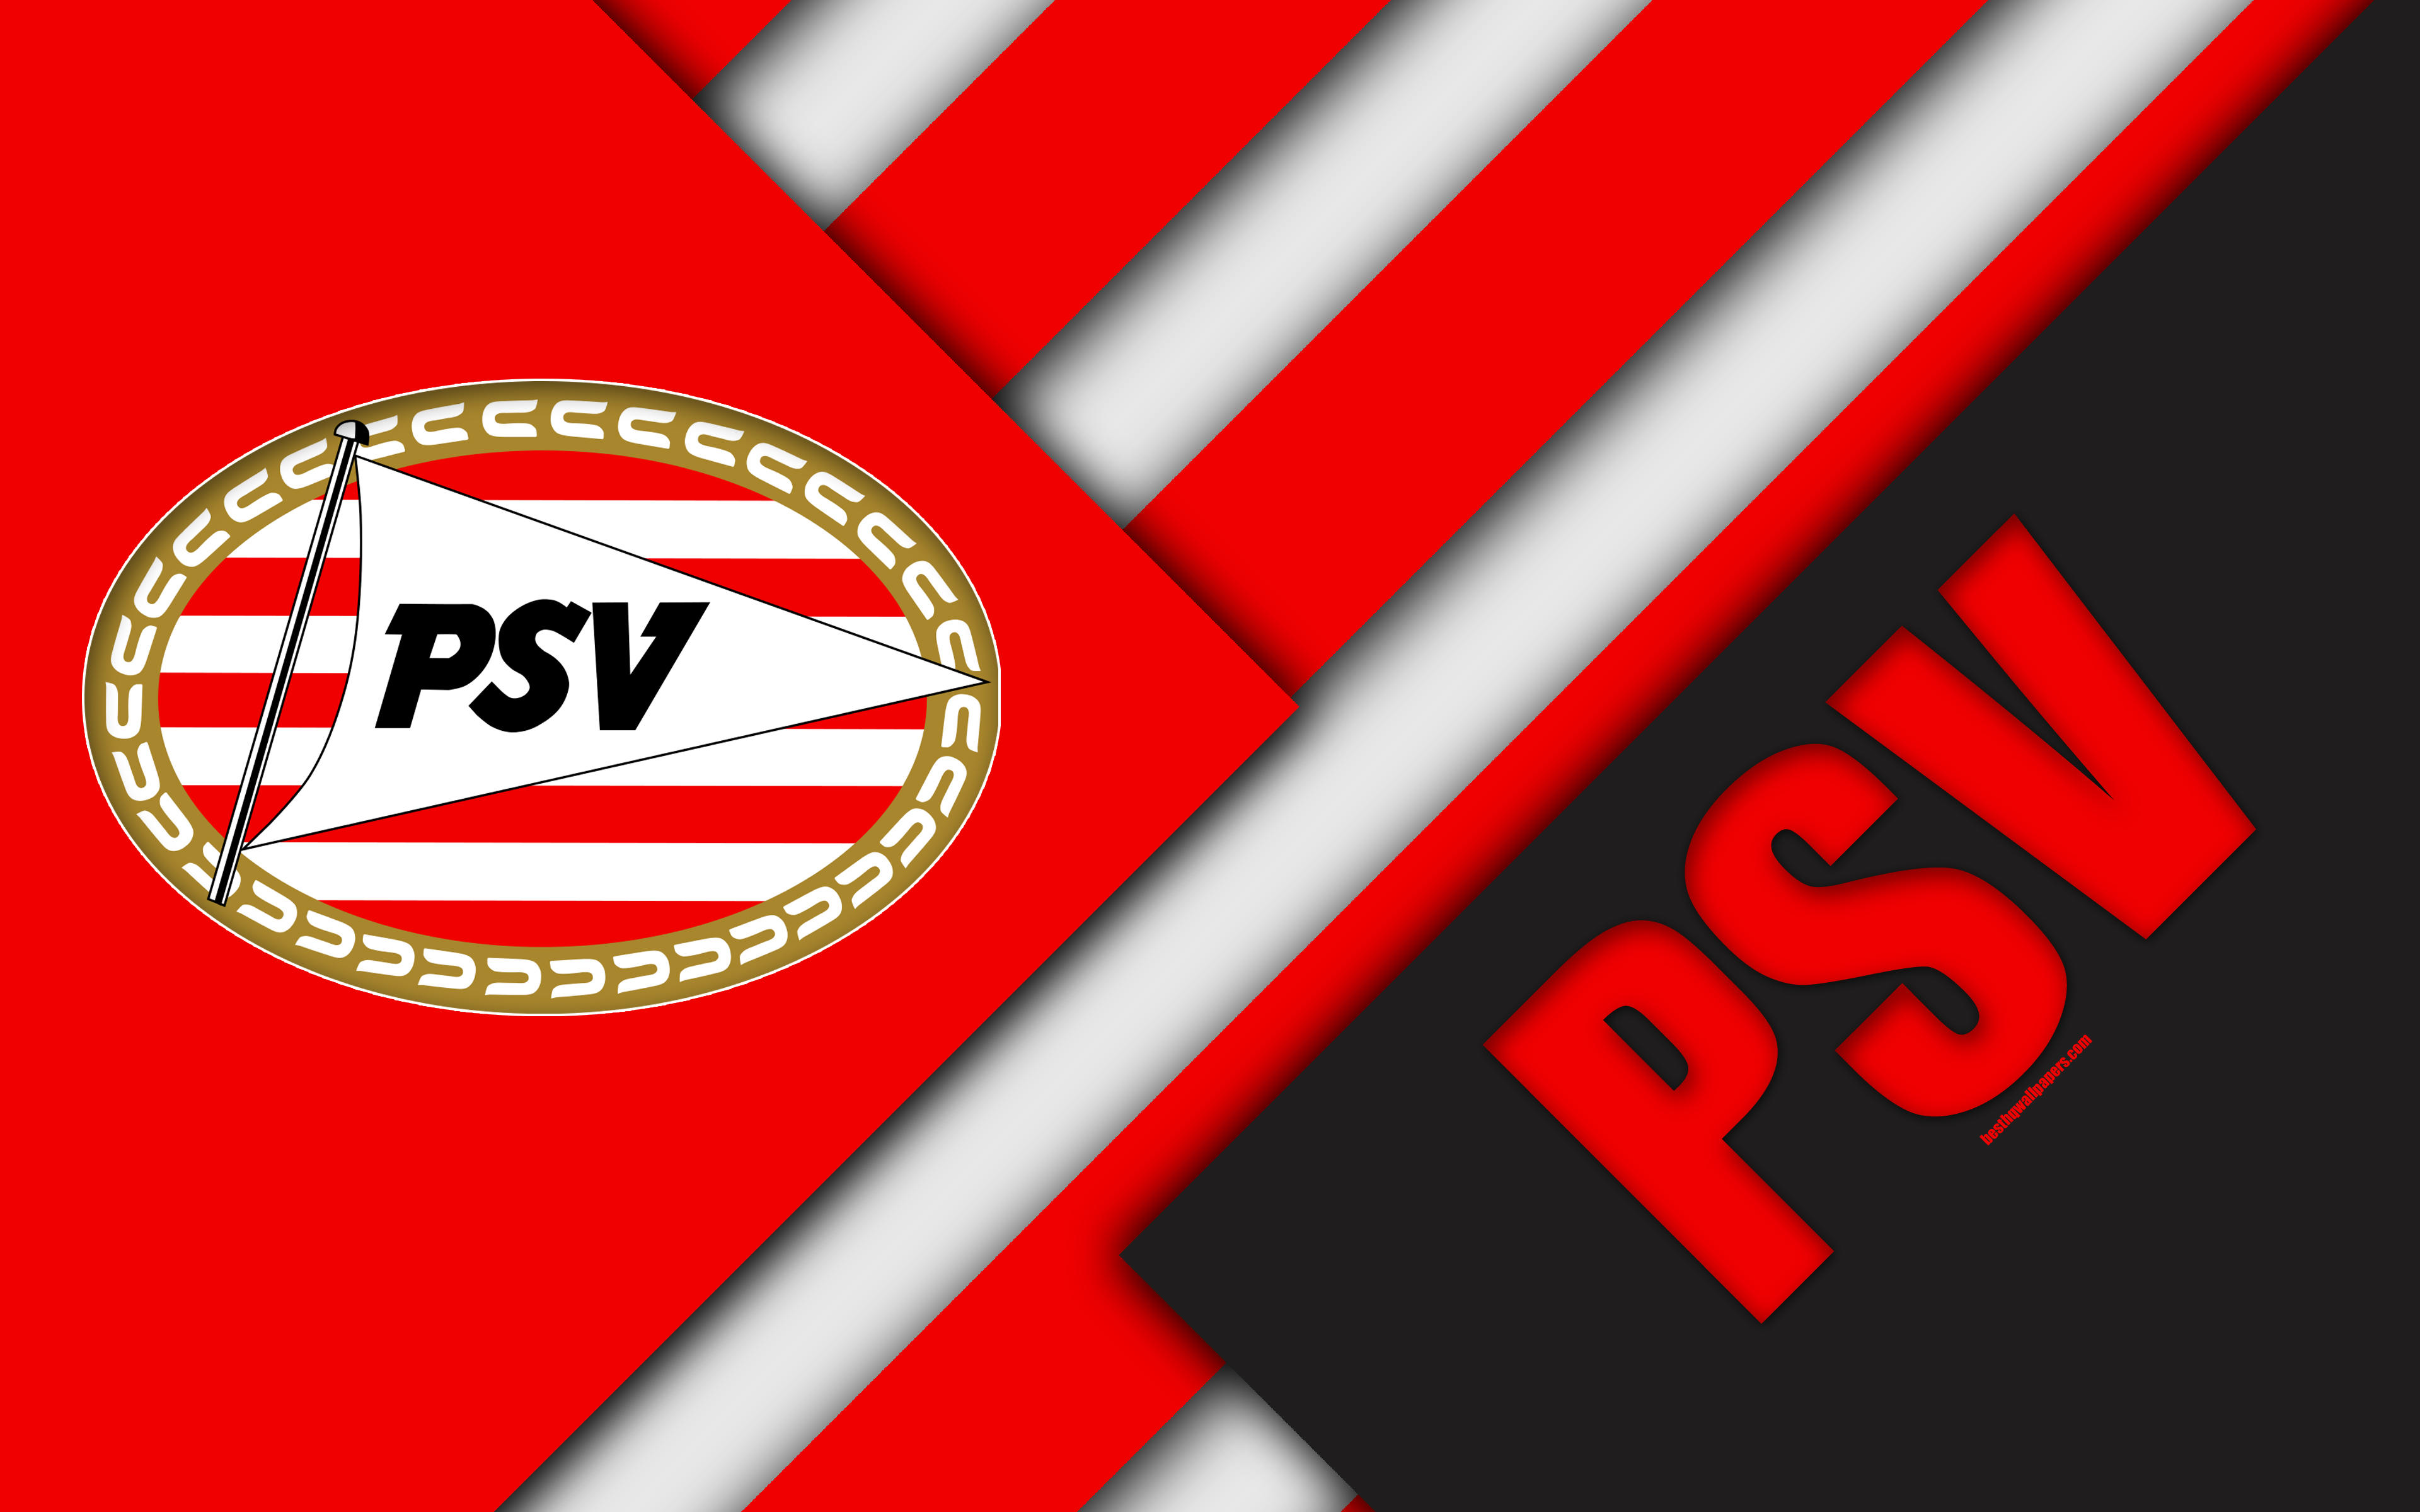 ダウンロード画像 Psv Eindhoven エンブレム 4k 材料設計 Psv Fc オランダサッカークラブ 白赤抽象化 Eredivisie アイントホーフェン オランダ サッカー 画面の解像度 3840x2400 壁紙デスクトップ上